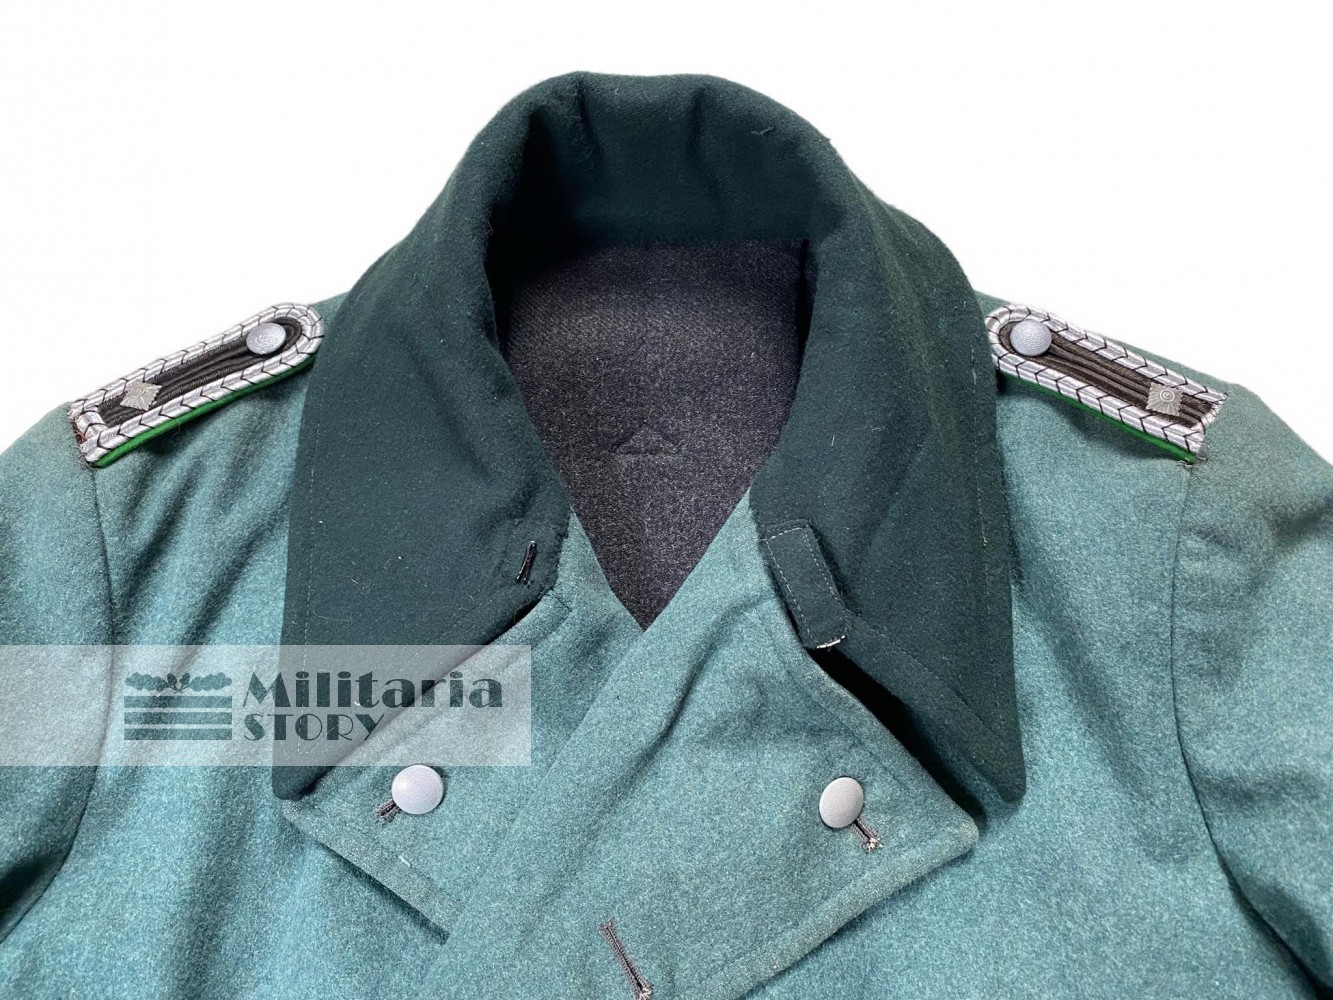 Polizei overcoat - Polizei overcoat: Third Reich Uniforms